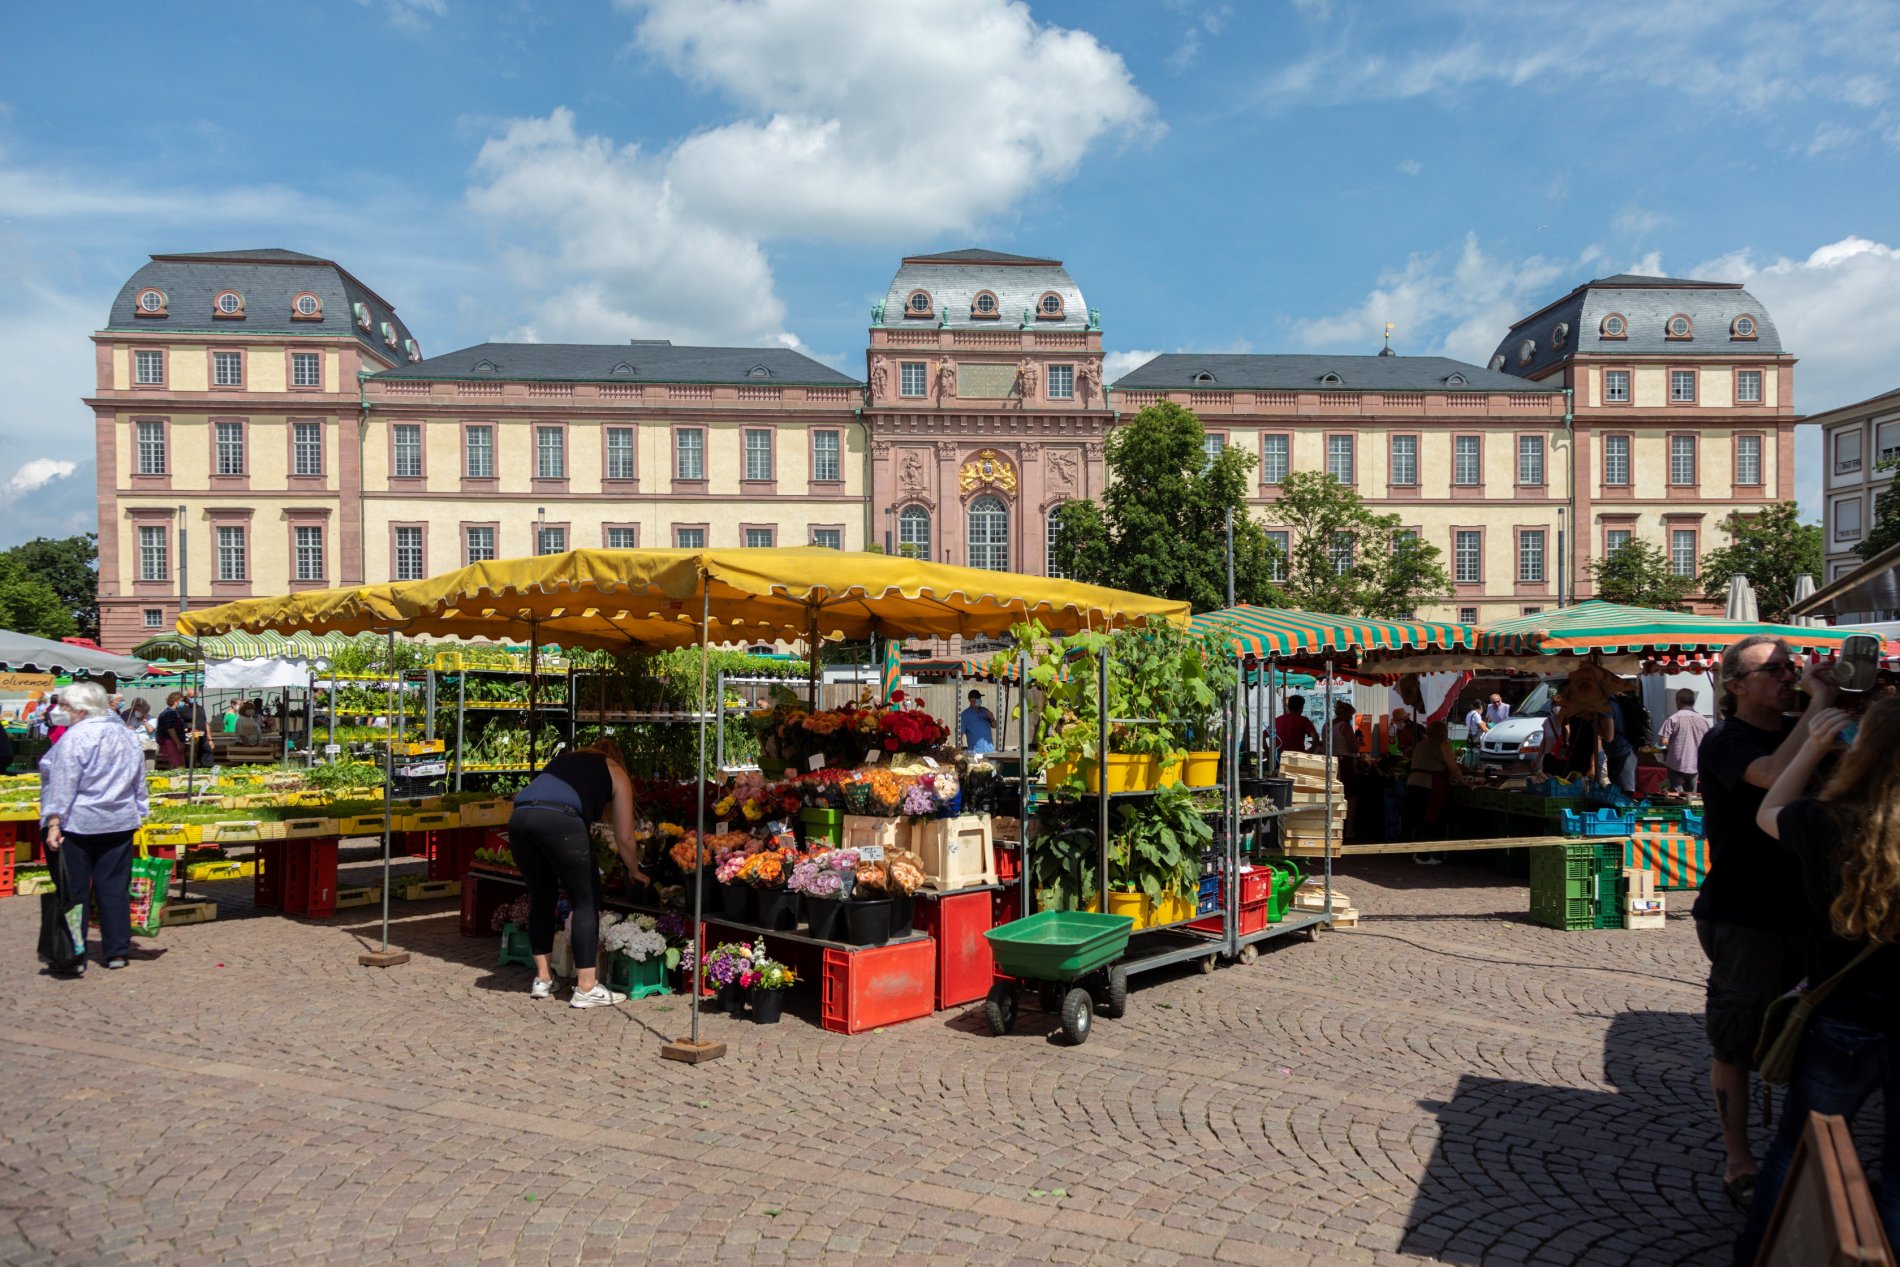 Wochenmarktstand mit Pflanzen und Blumen, im Hintergrund die Fassade des Darmstädter Residenzschloss.